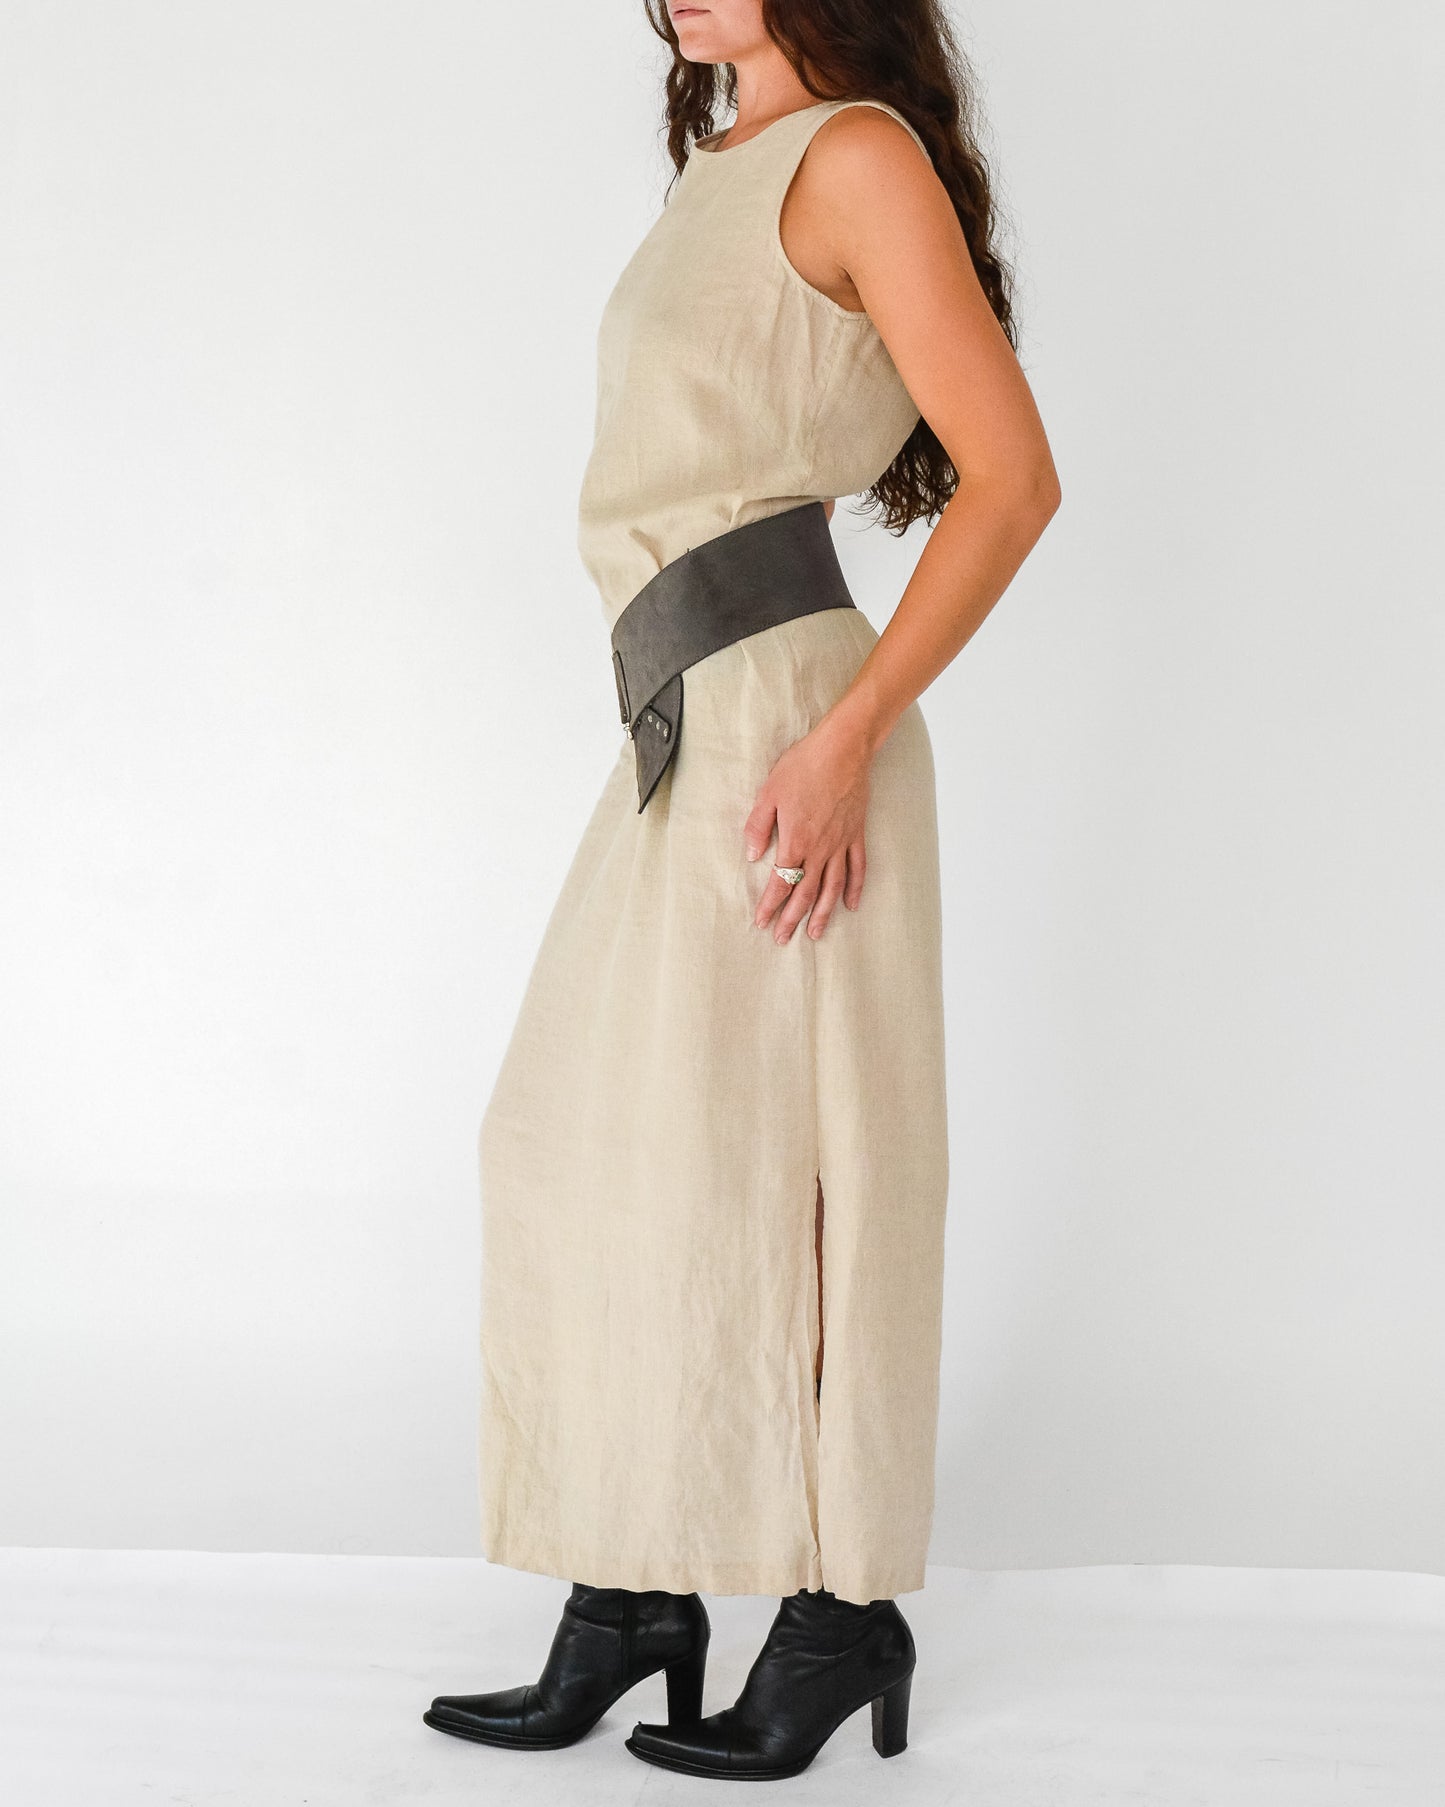 Ecru Linen Maxi Dress (M)